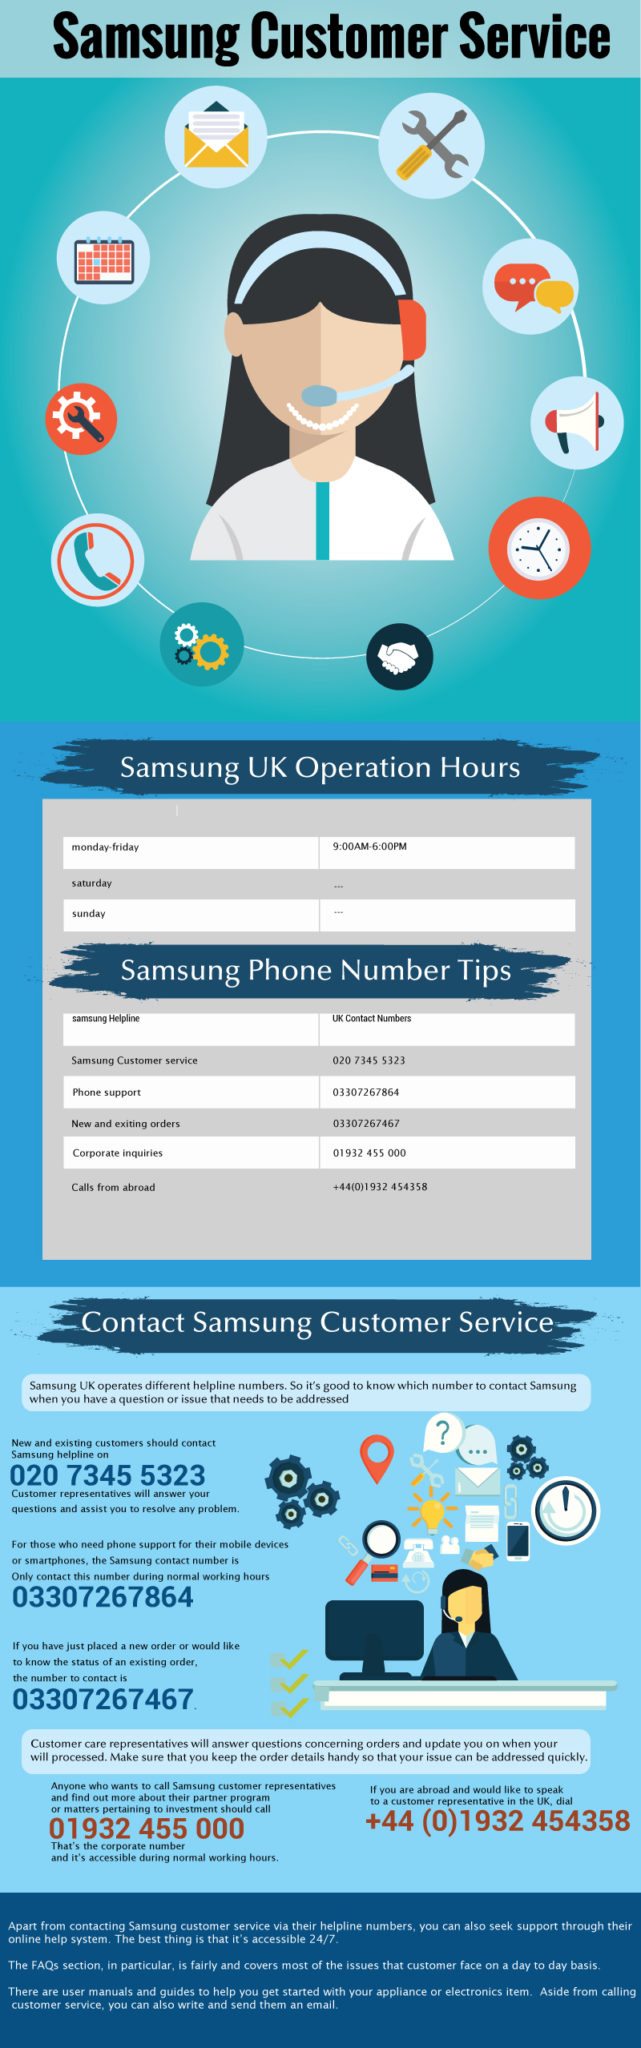 Samsung Helpline